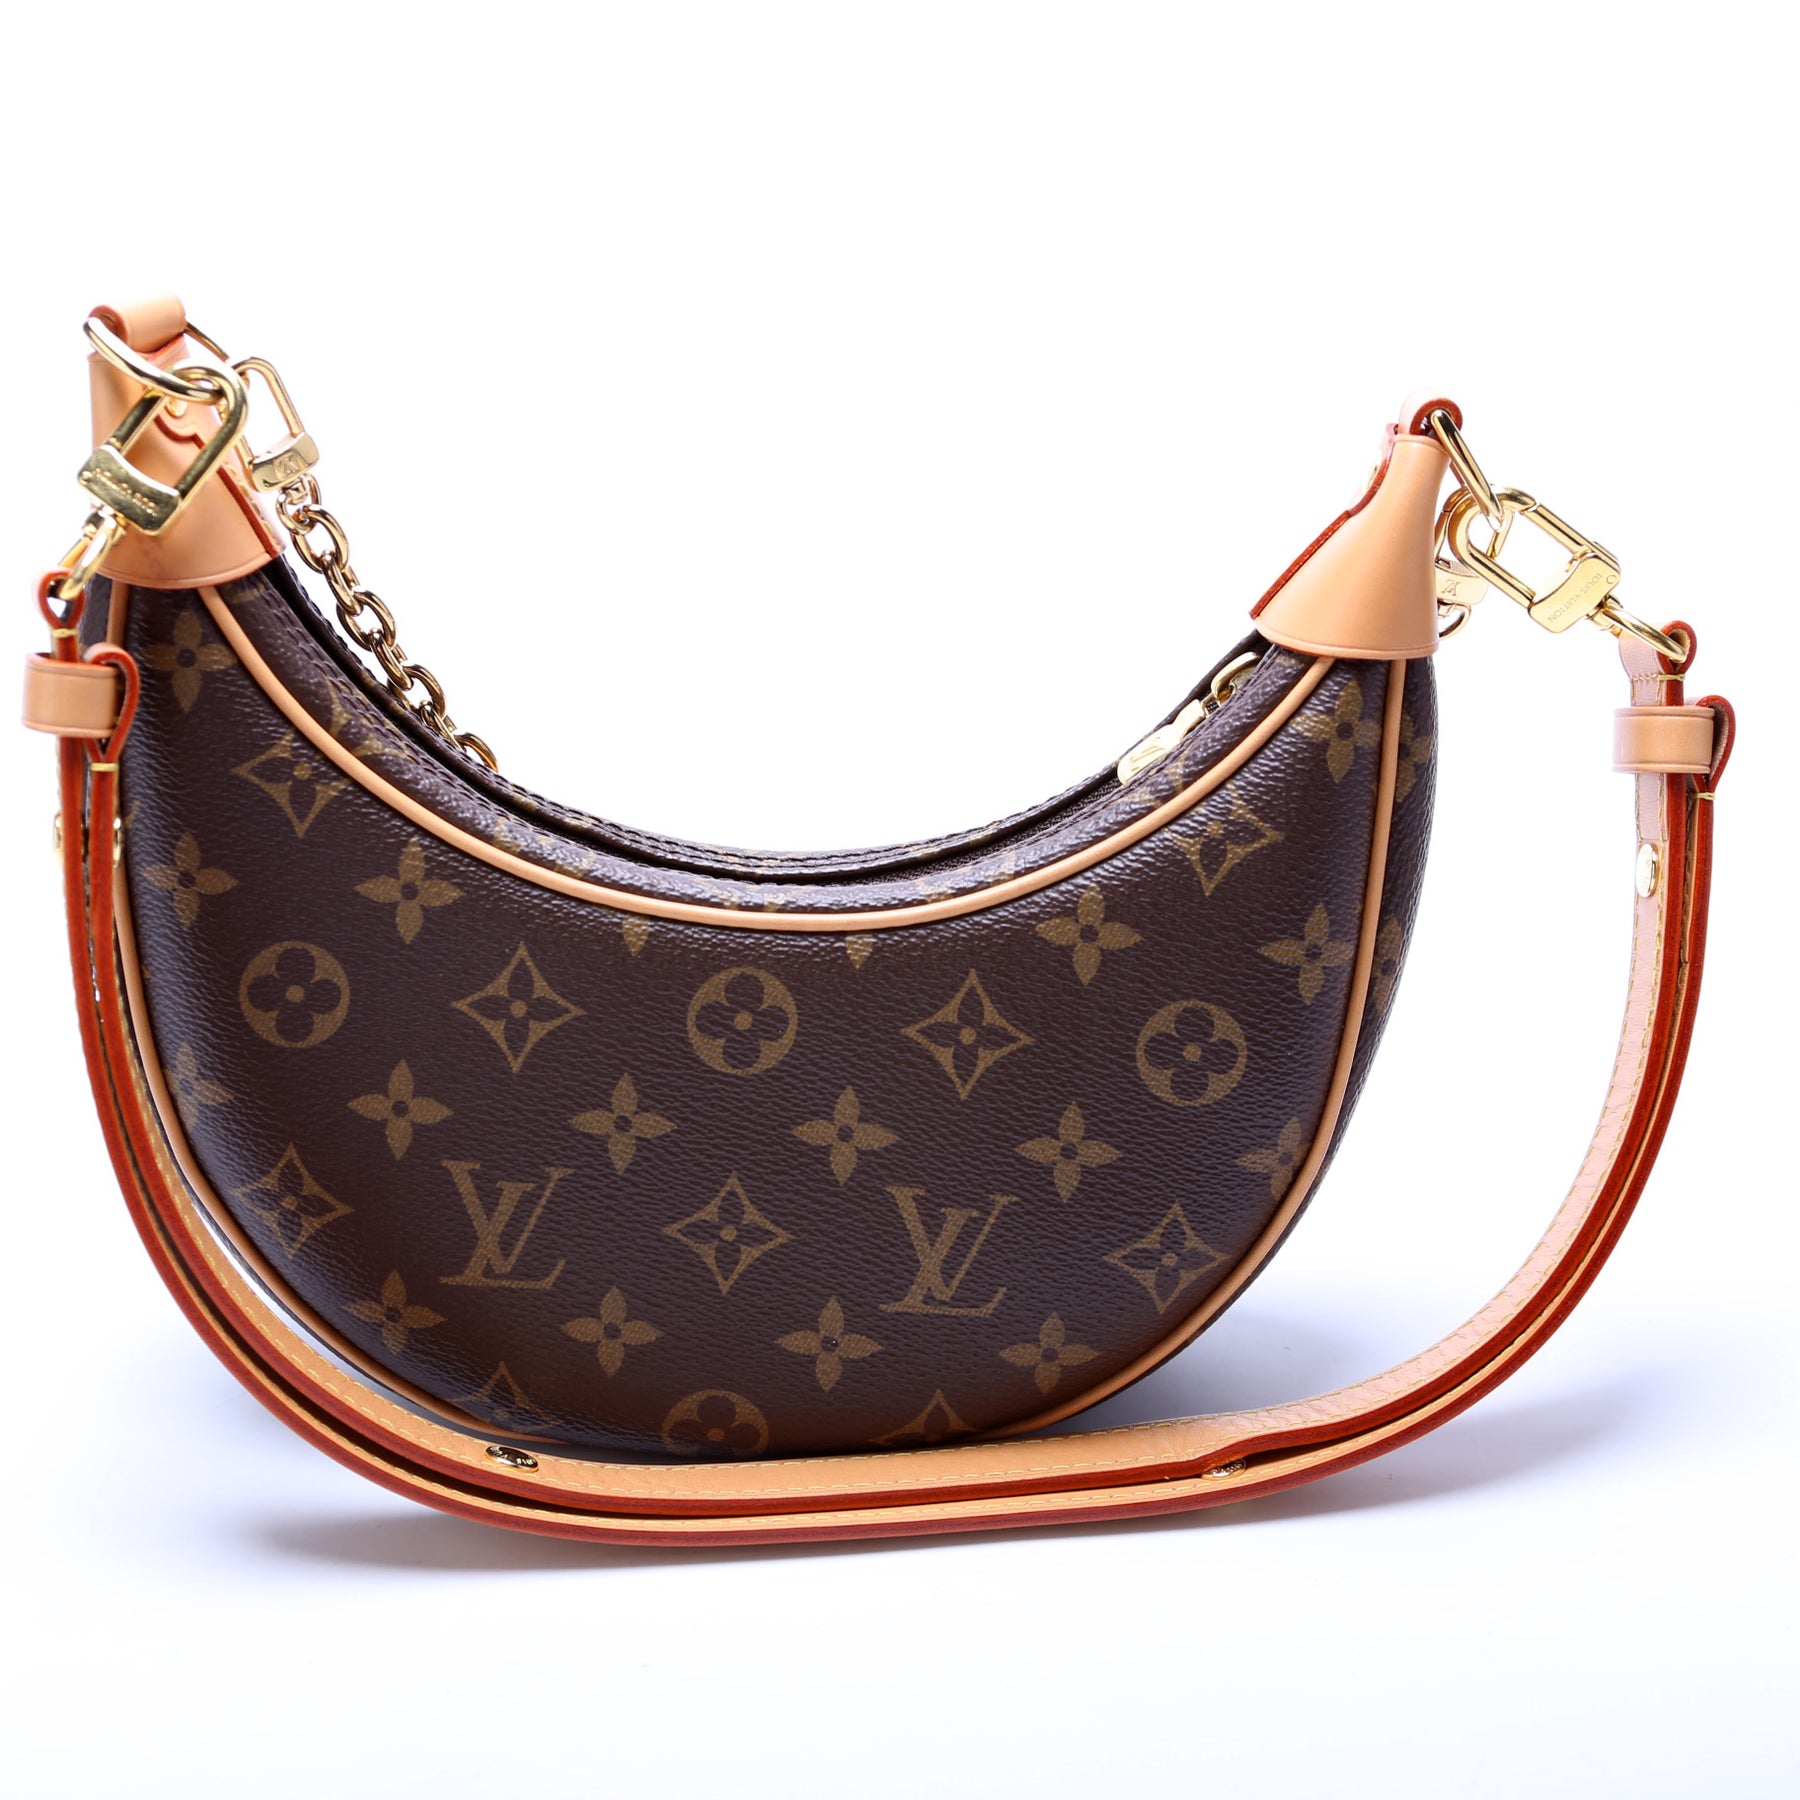 Louis Vuitton Loop Monogram Bag, New in Box